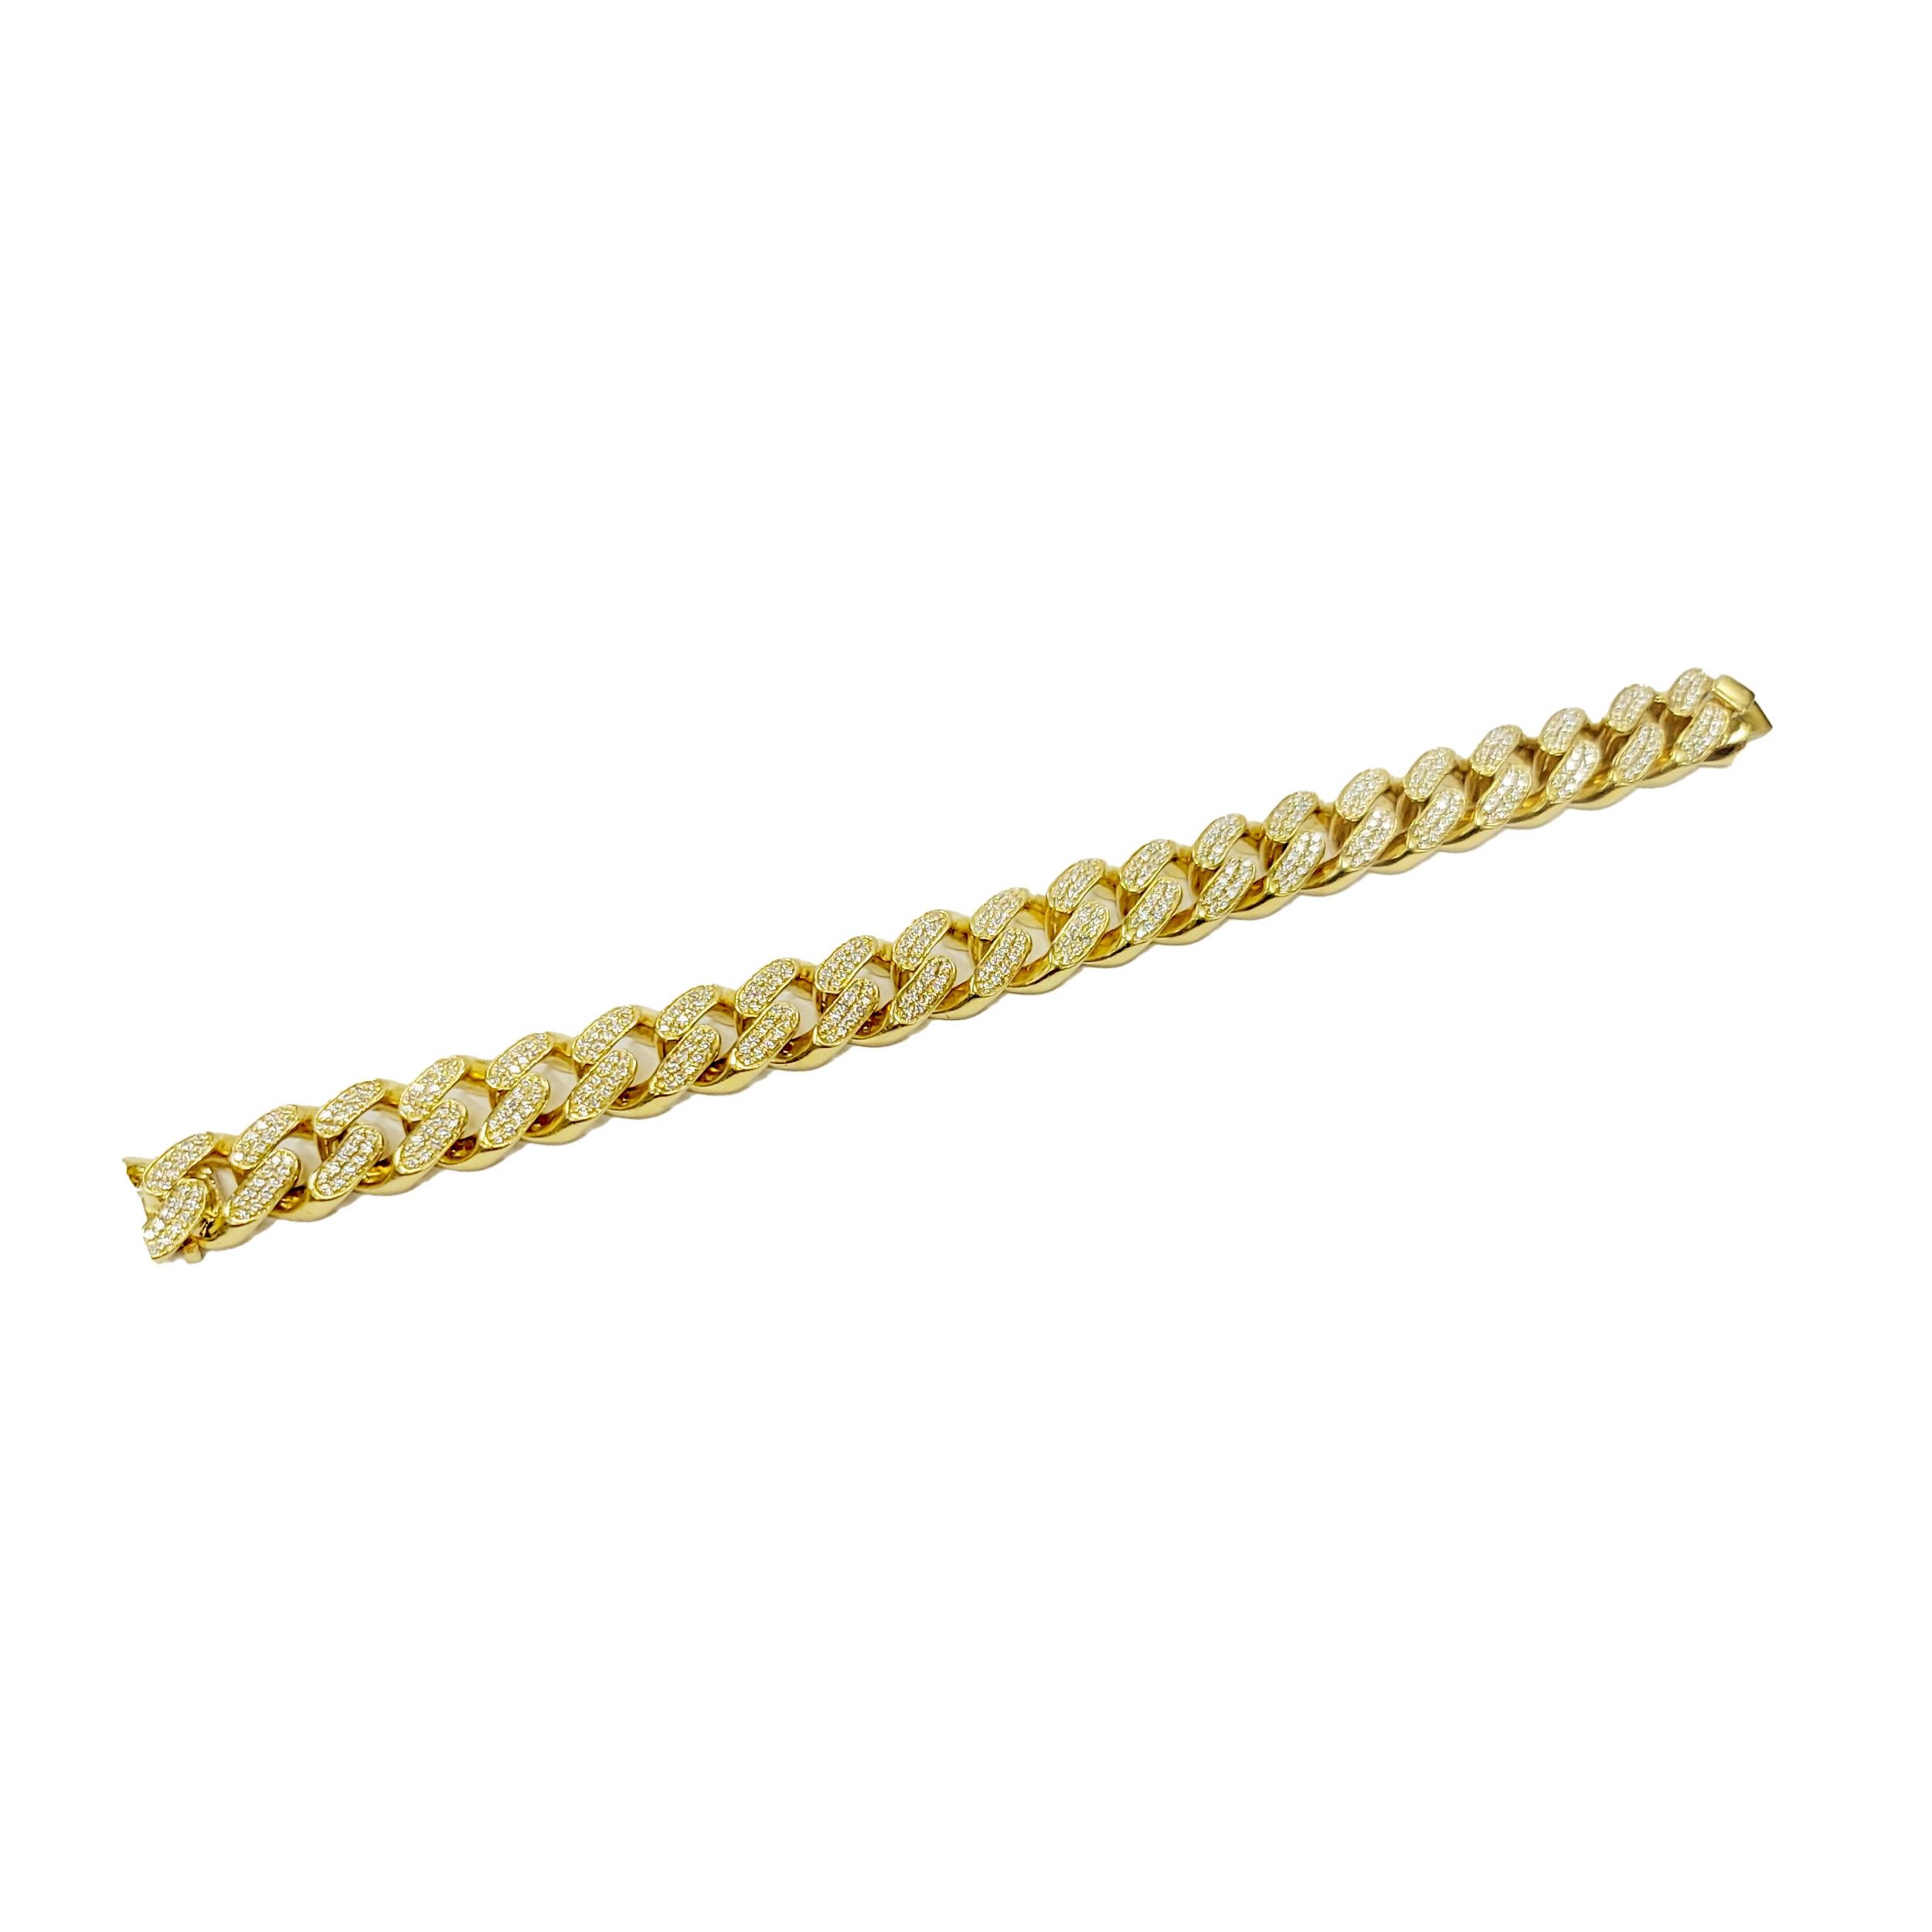 Kubanisches Gliederarmband aus 18 Karat Gelbgold mit 5,11 Karat Gesamtgewicht an gepflasterten Diamanten.
7,8 Zoll lang .50 Zoll breit

